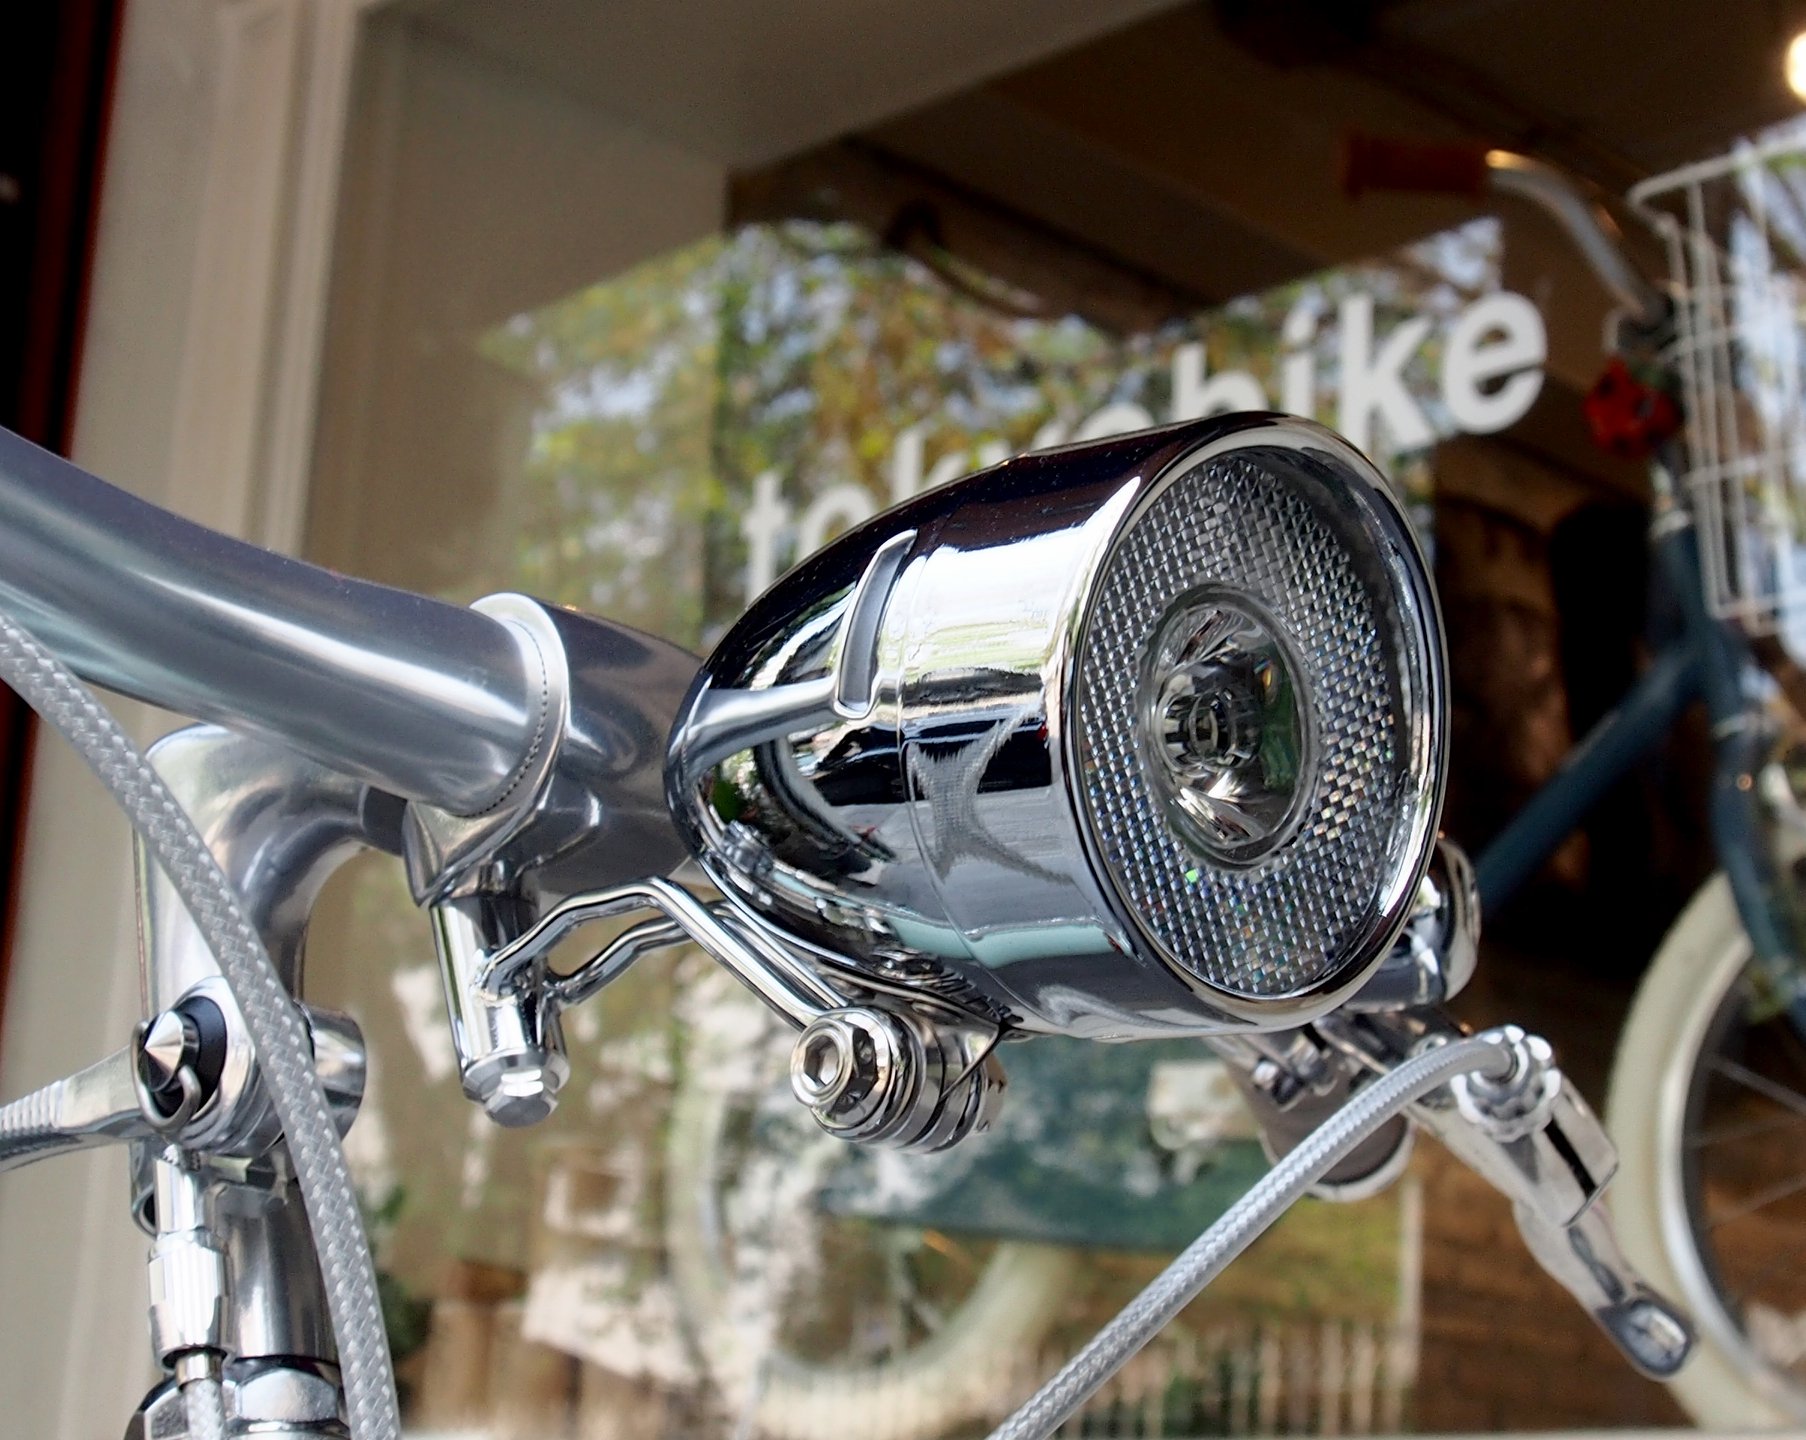 อุปกรณ์จักรยาน ทำขึ้นพิเศษ สำหรับยึดติดไฟหน้าแบบวินเทจ ที่ใต้ stem กลางแฮนด์